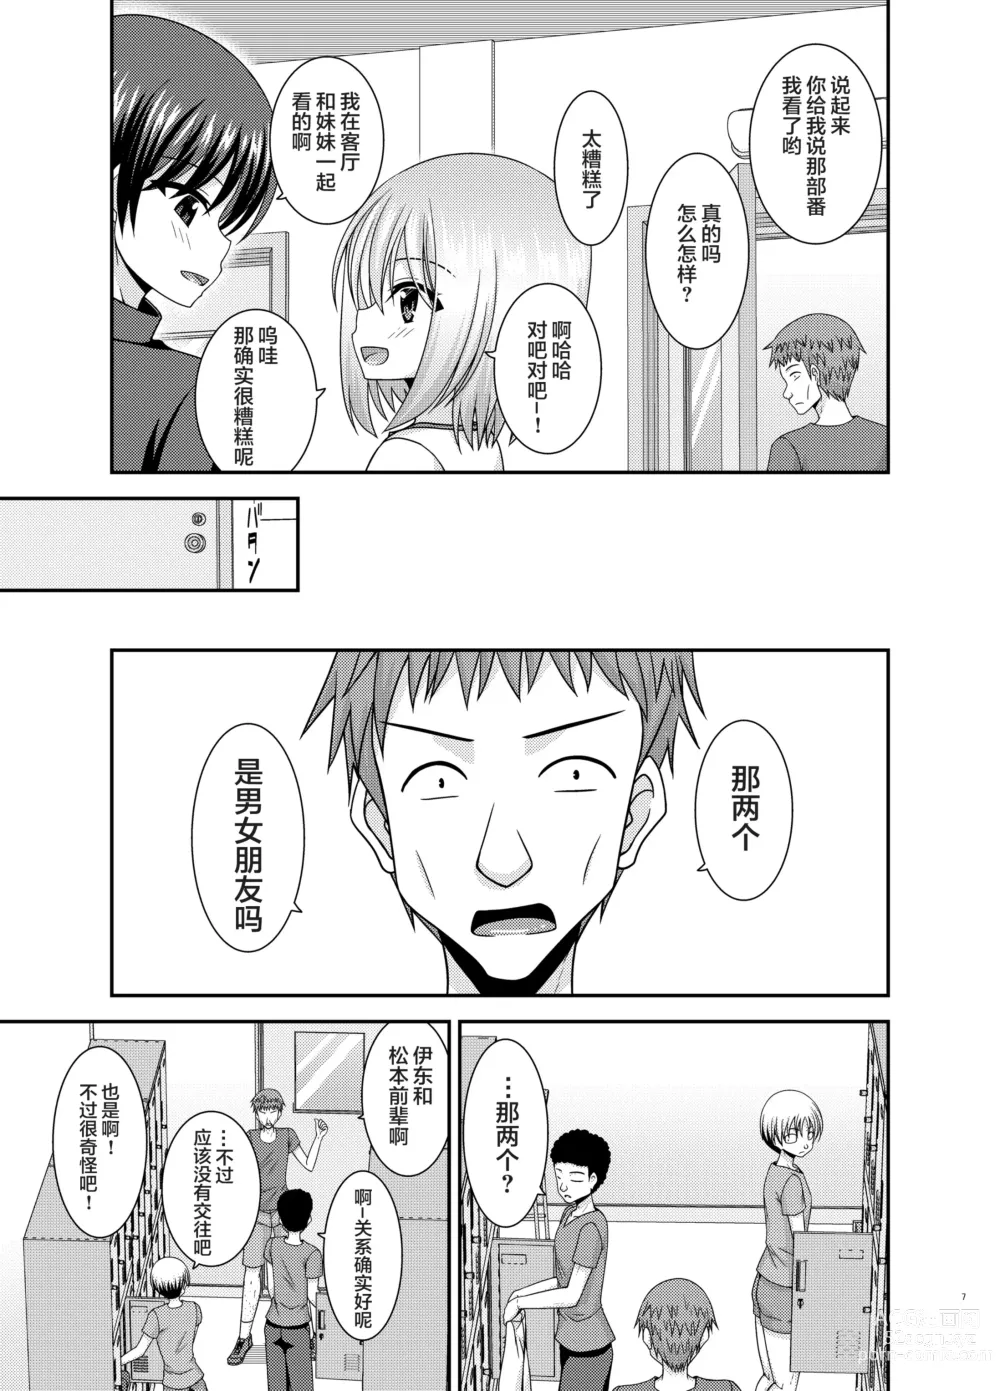 Page 4 of manga Nozokare Roshutsu Shoujo